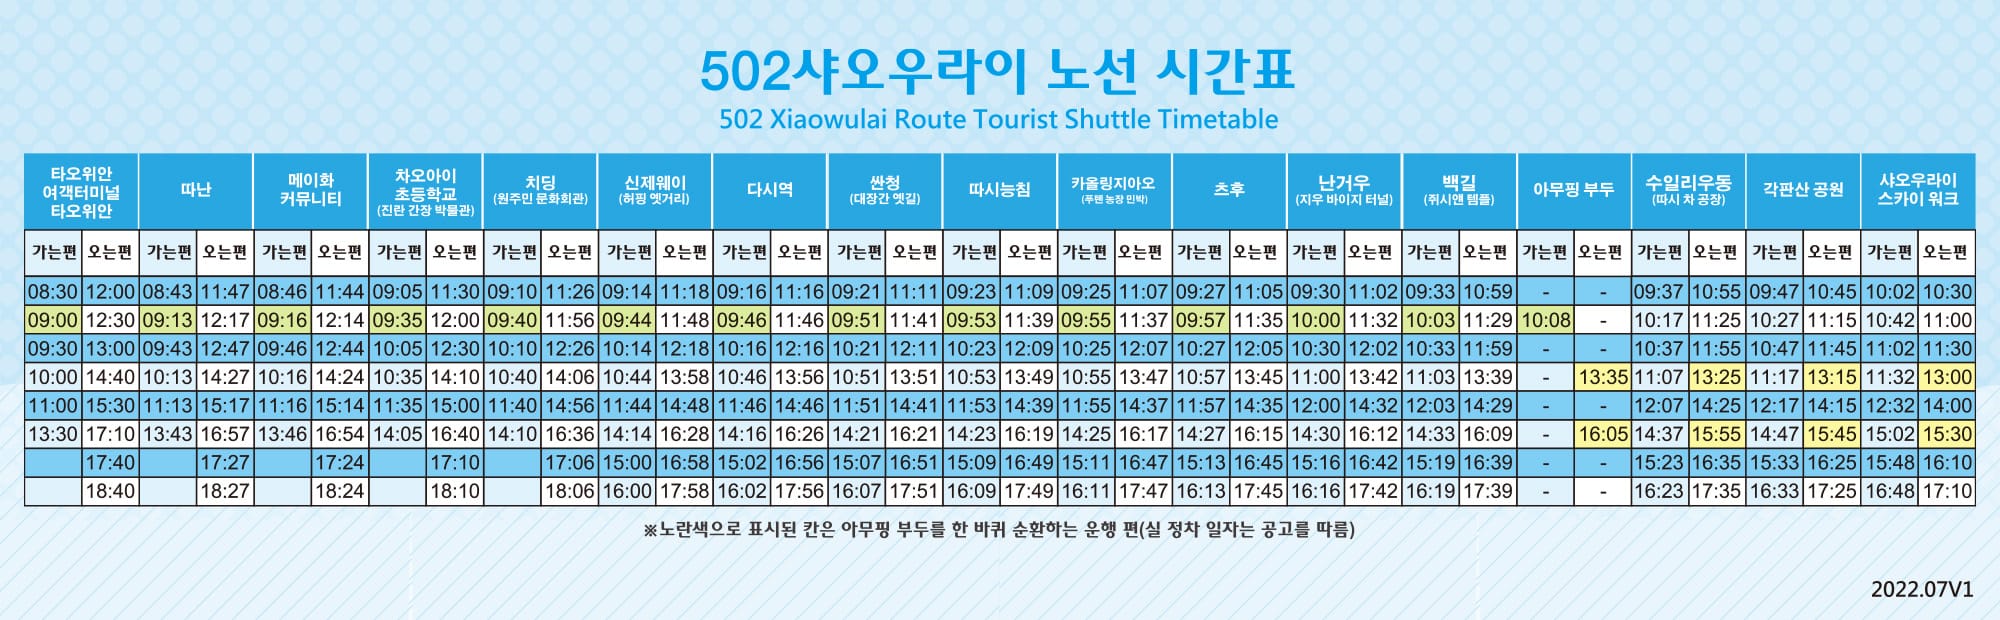 버스 시간표